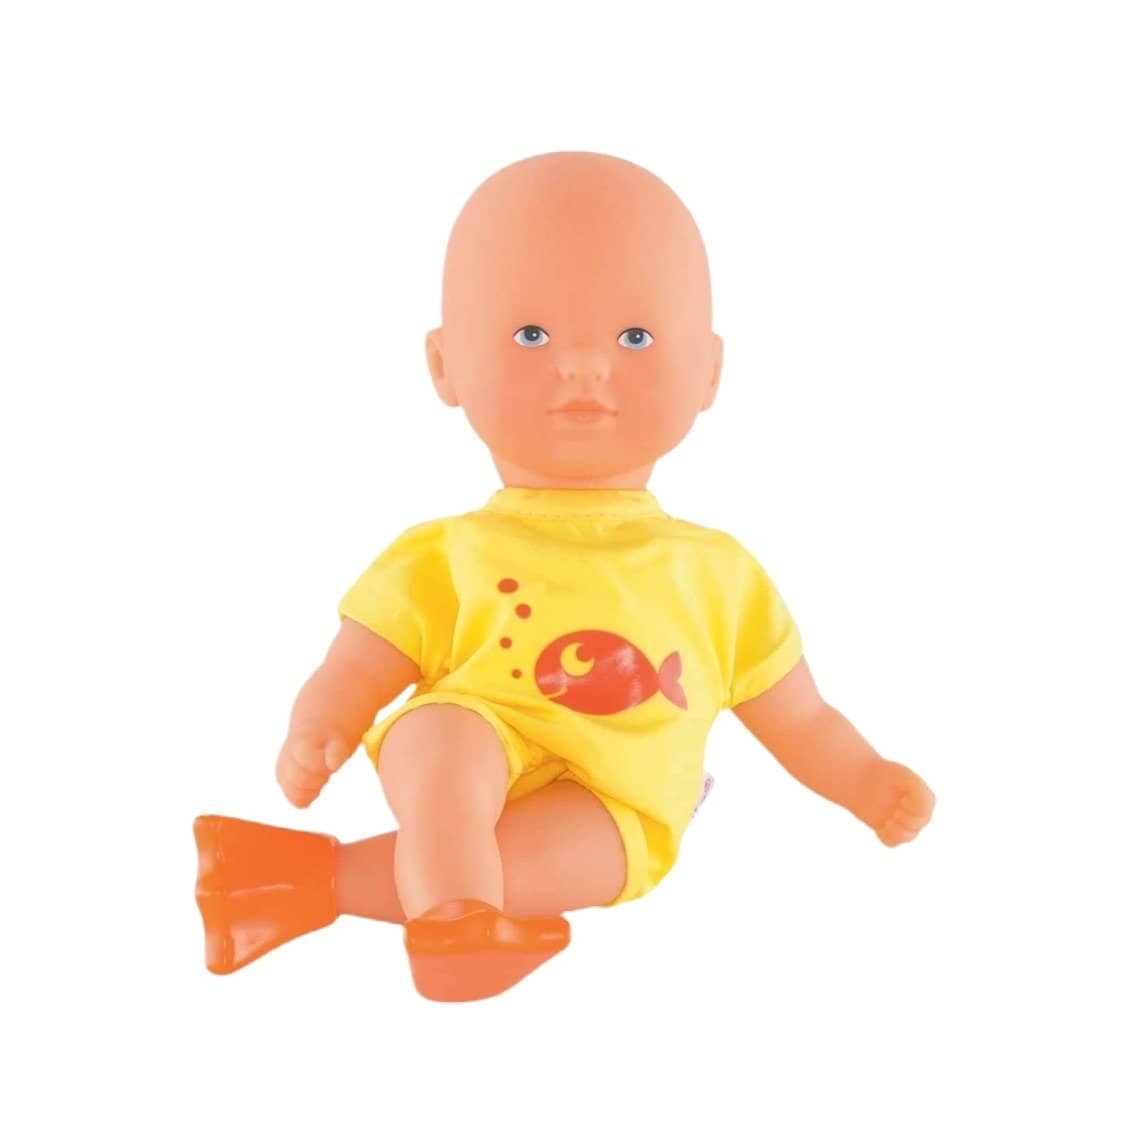 Mini Bath Yellow - Corolle Mon Premier Poupon Toy Baby Doll-Kidding Around NYC